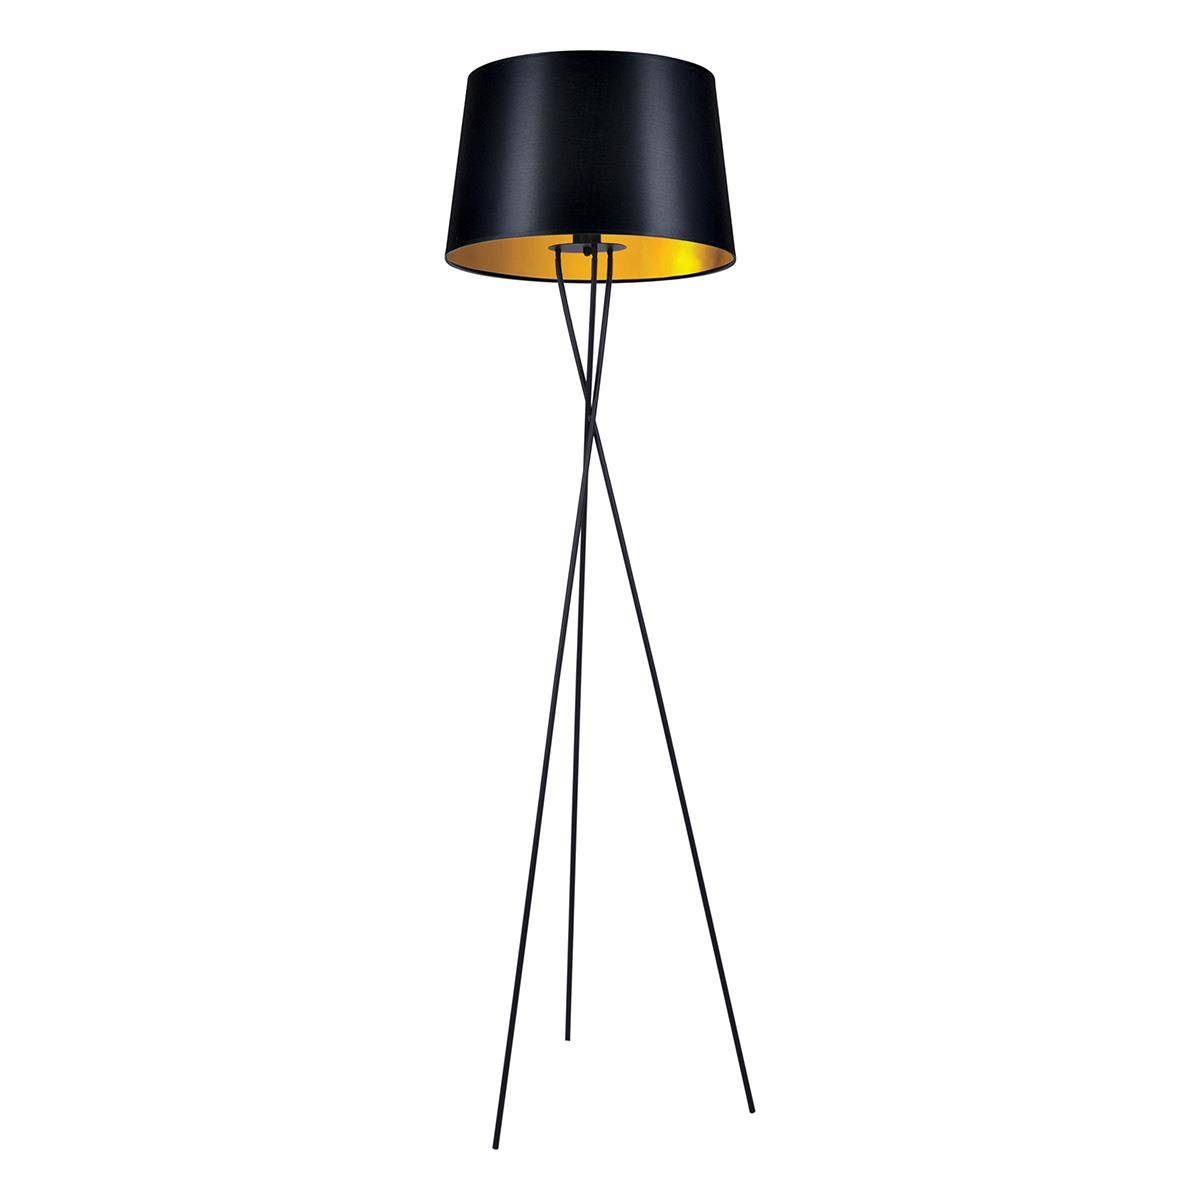 Dekoracyjna, czarno-zota lampa podogowa K-4358 z serii REMI GOLD